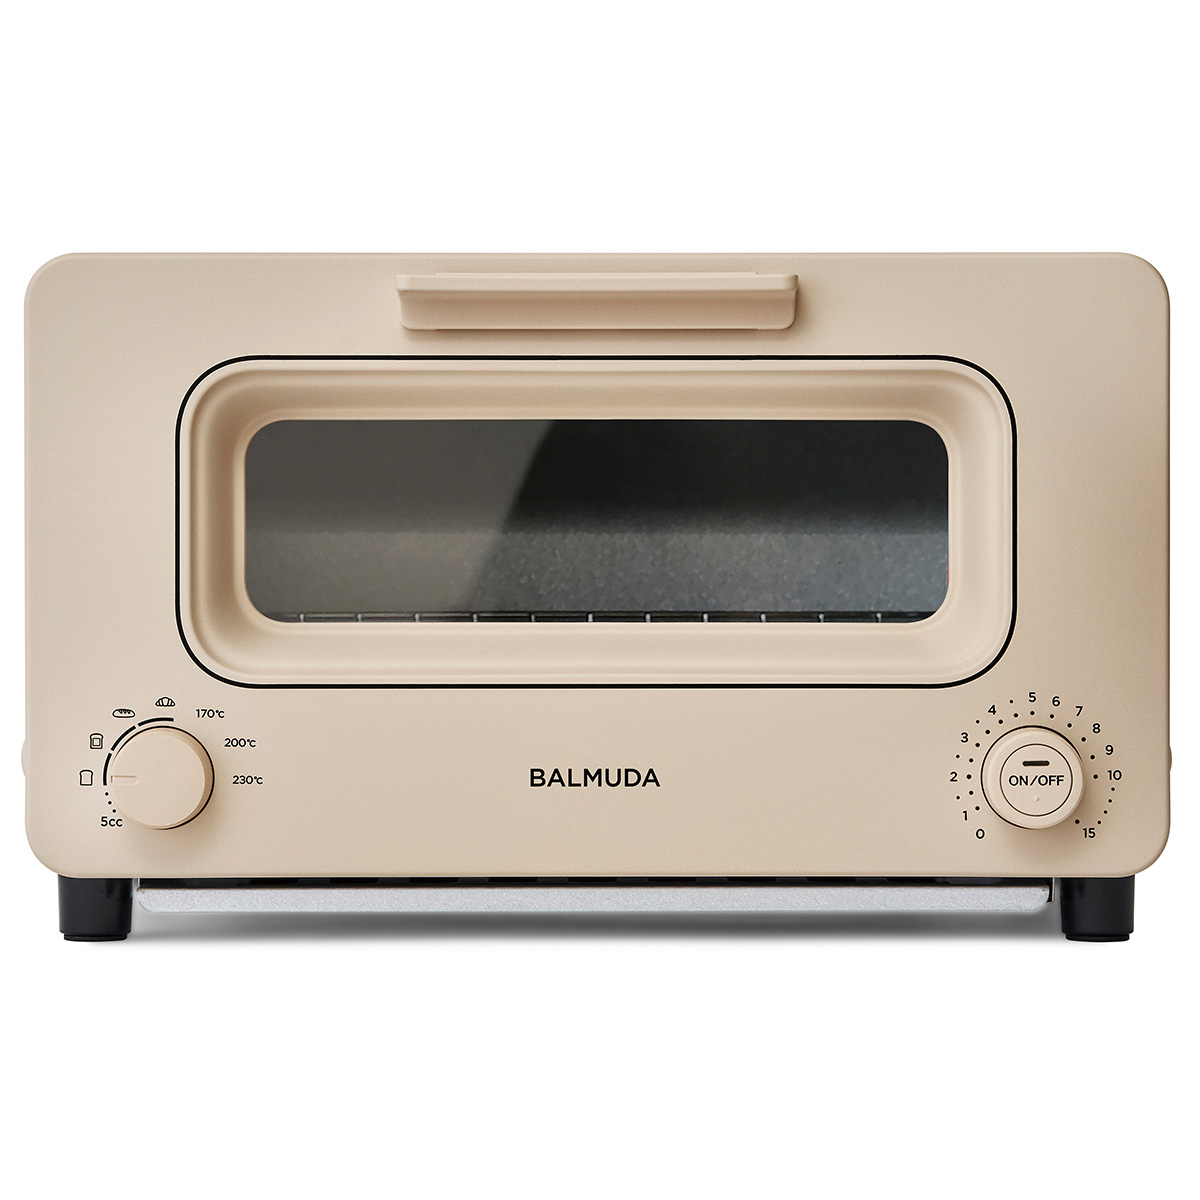 ザ・トースター [30日間全額返金保証] 正規品 「BALMUDA The Toaster」 ベージュ